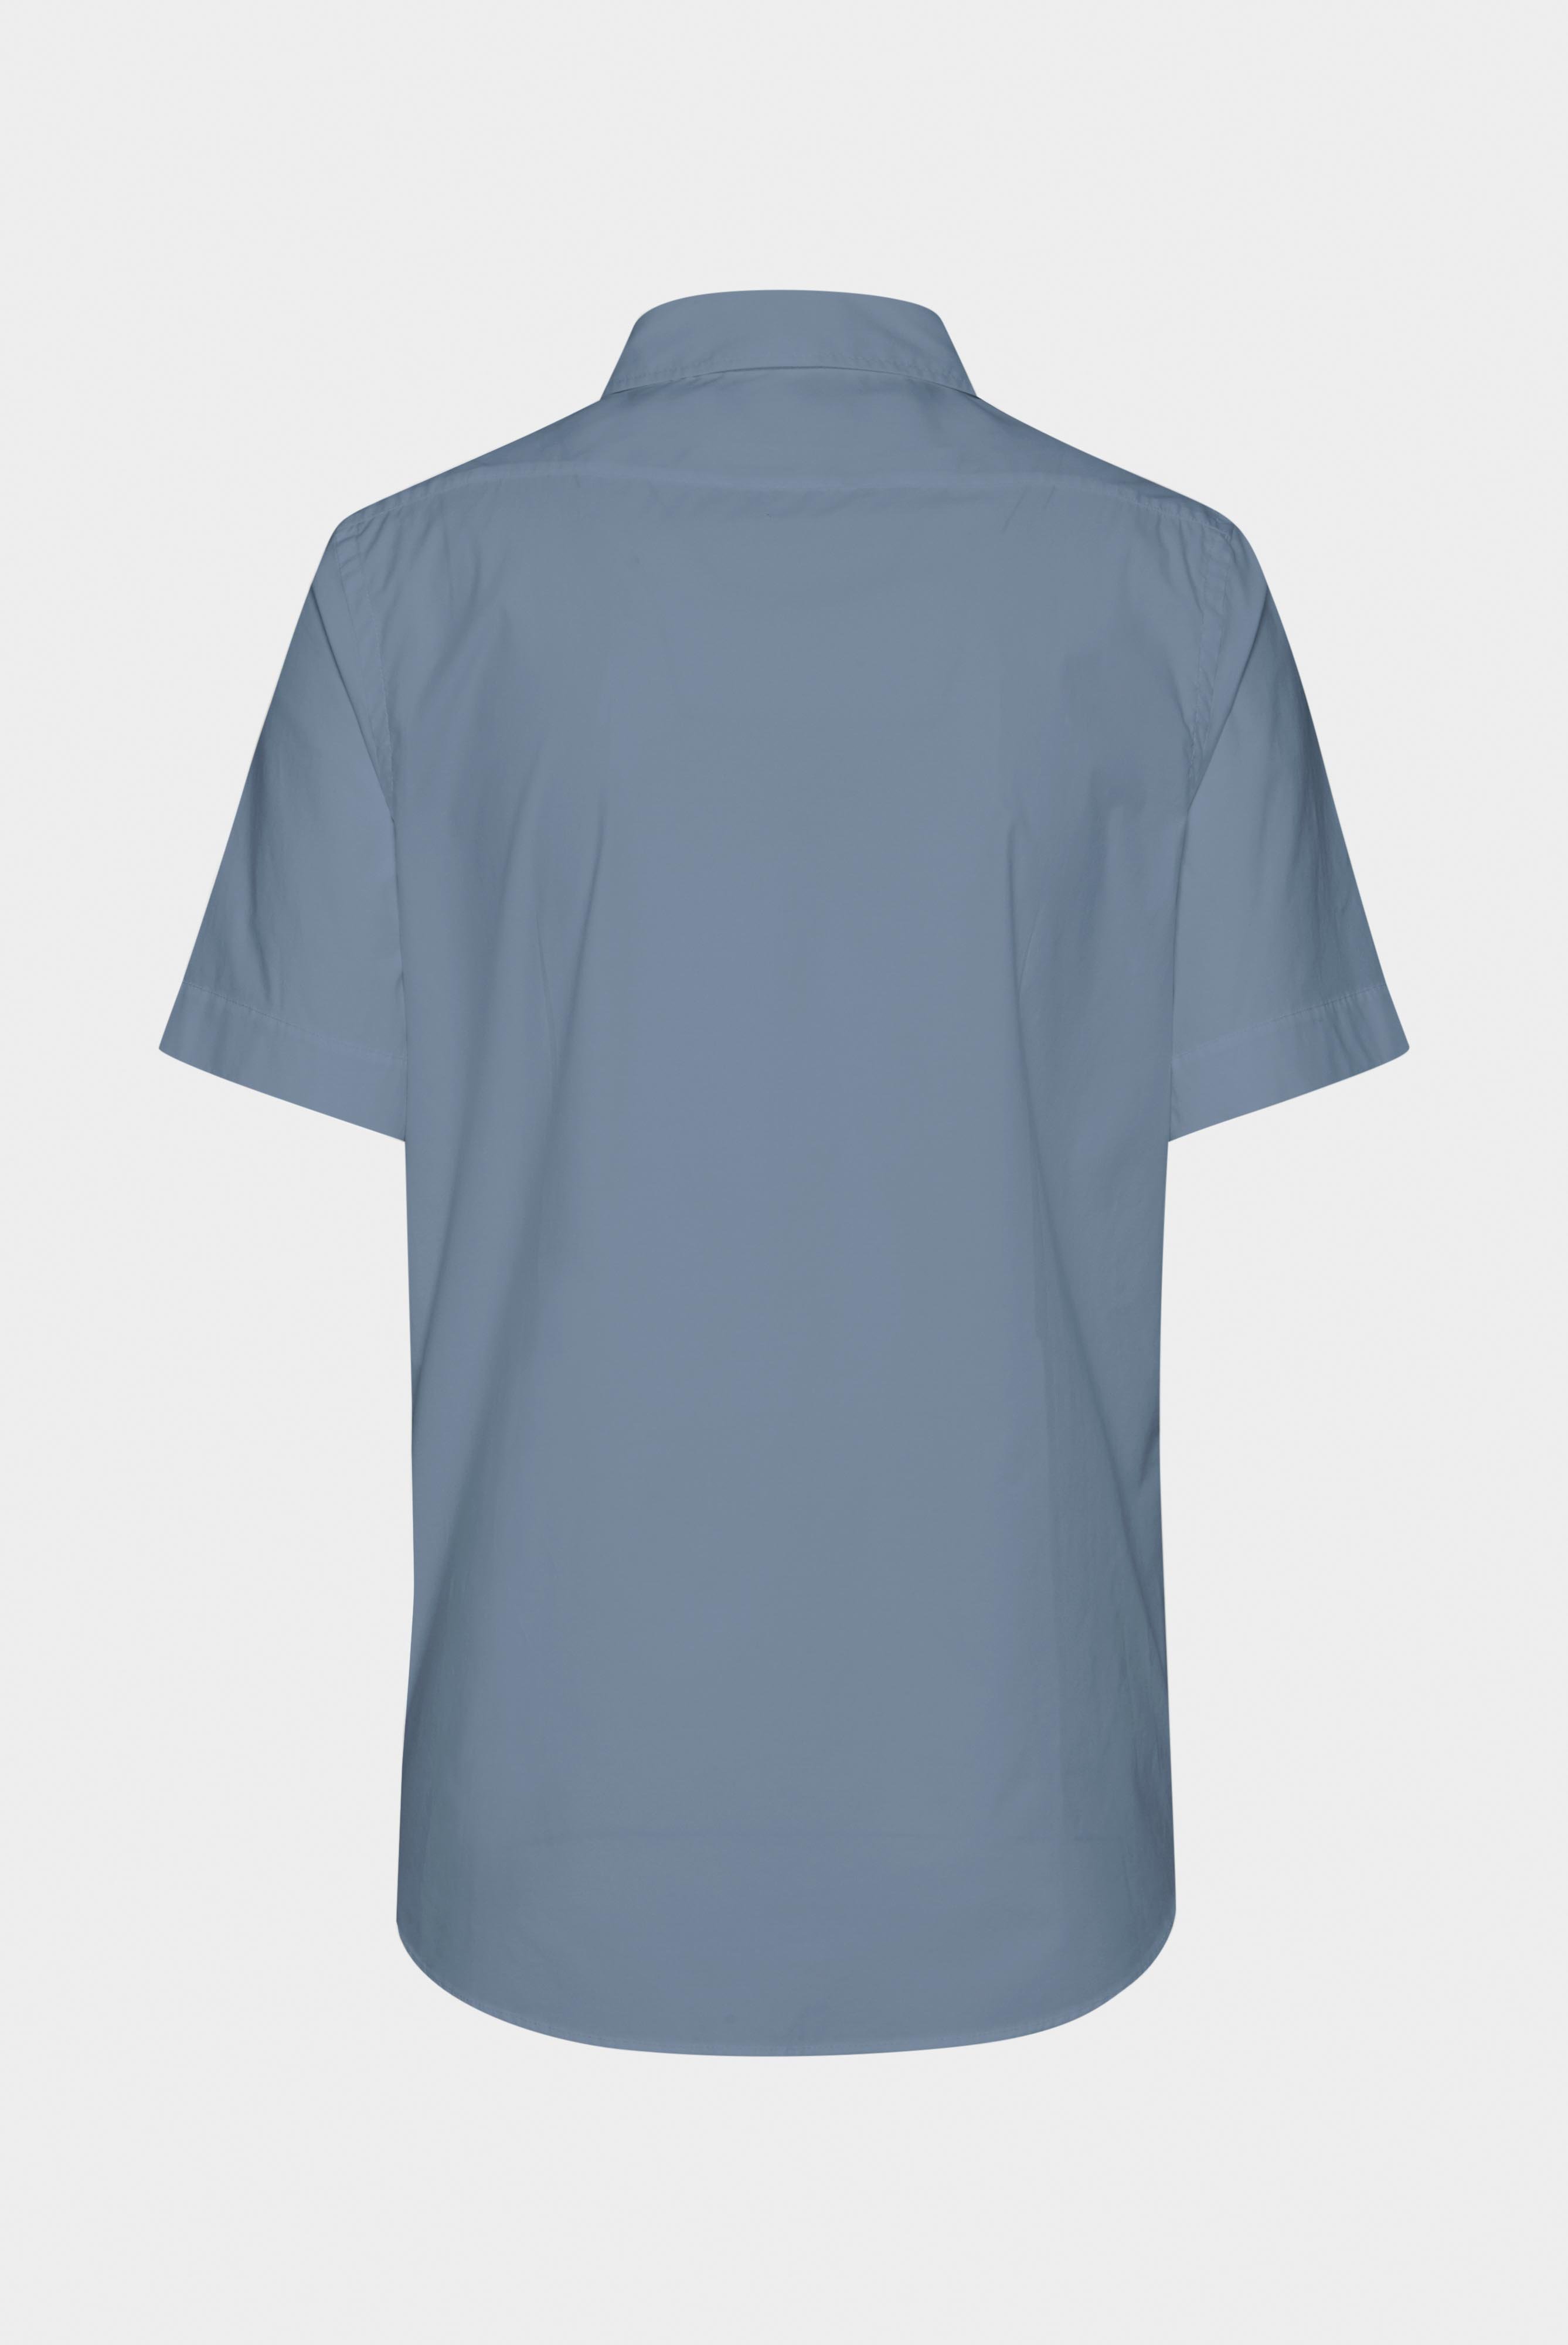 Kurzarm Hemden+Hemd aus leichter Baumwolle mit Stretch-Hemdärmeln+20.2035.Q2.H00240.000.43